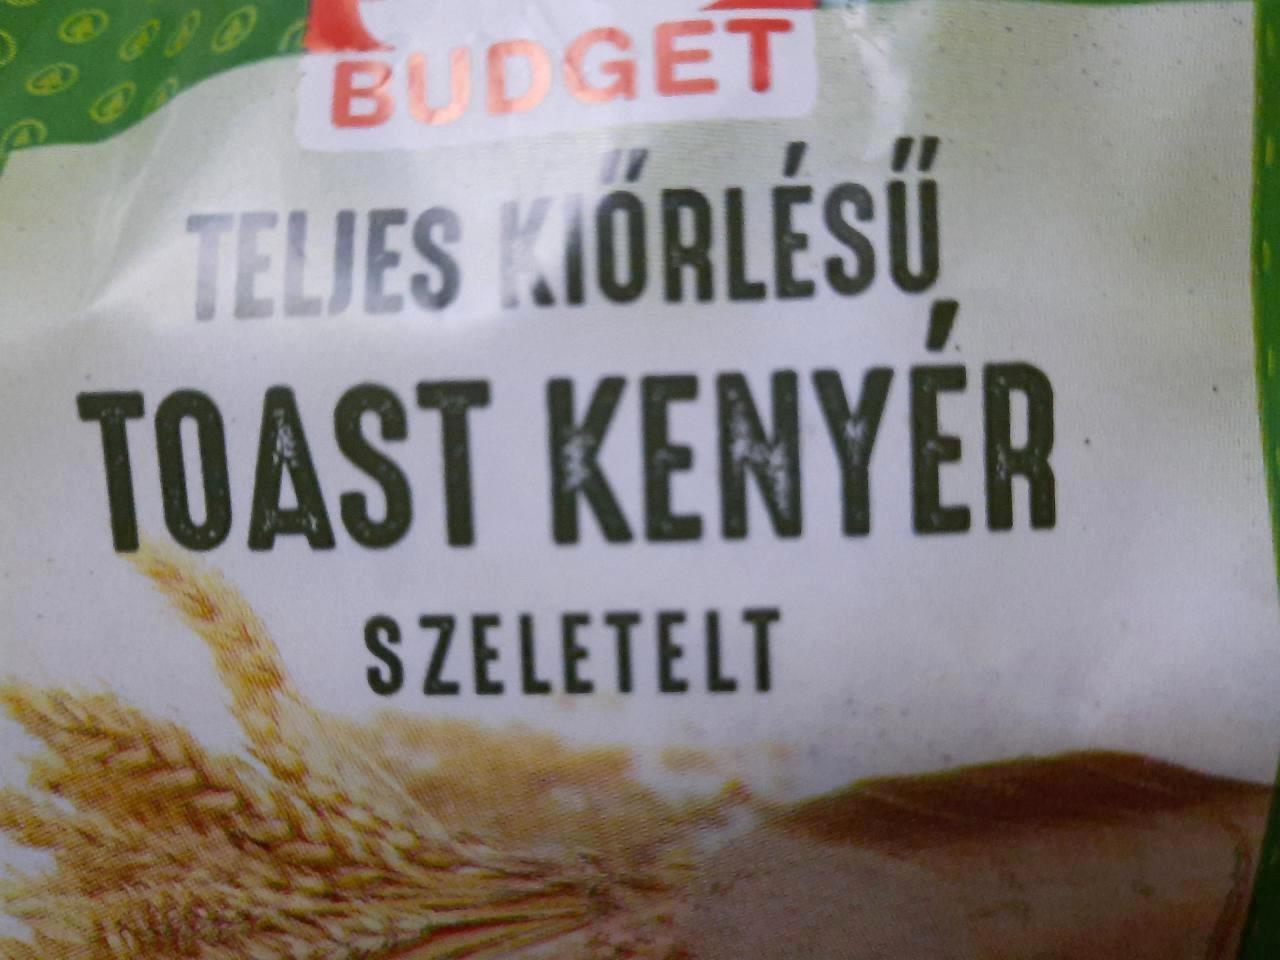 Képek - Teljes kiőrlésű toast kenyér szeletelt S Budget